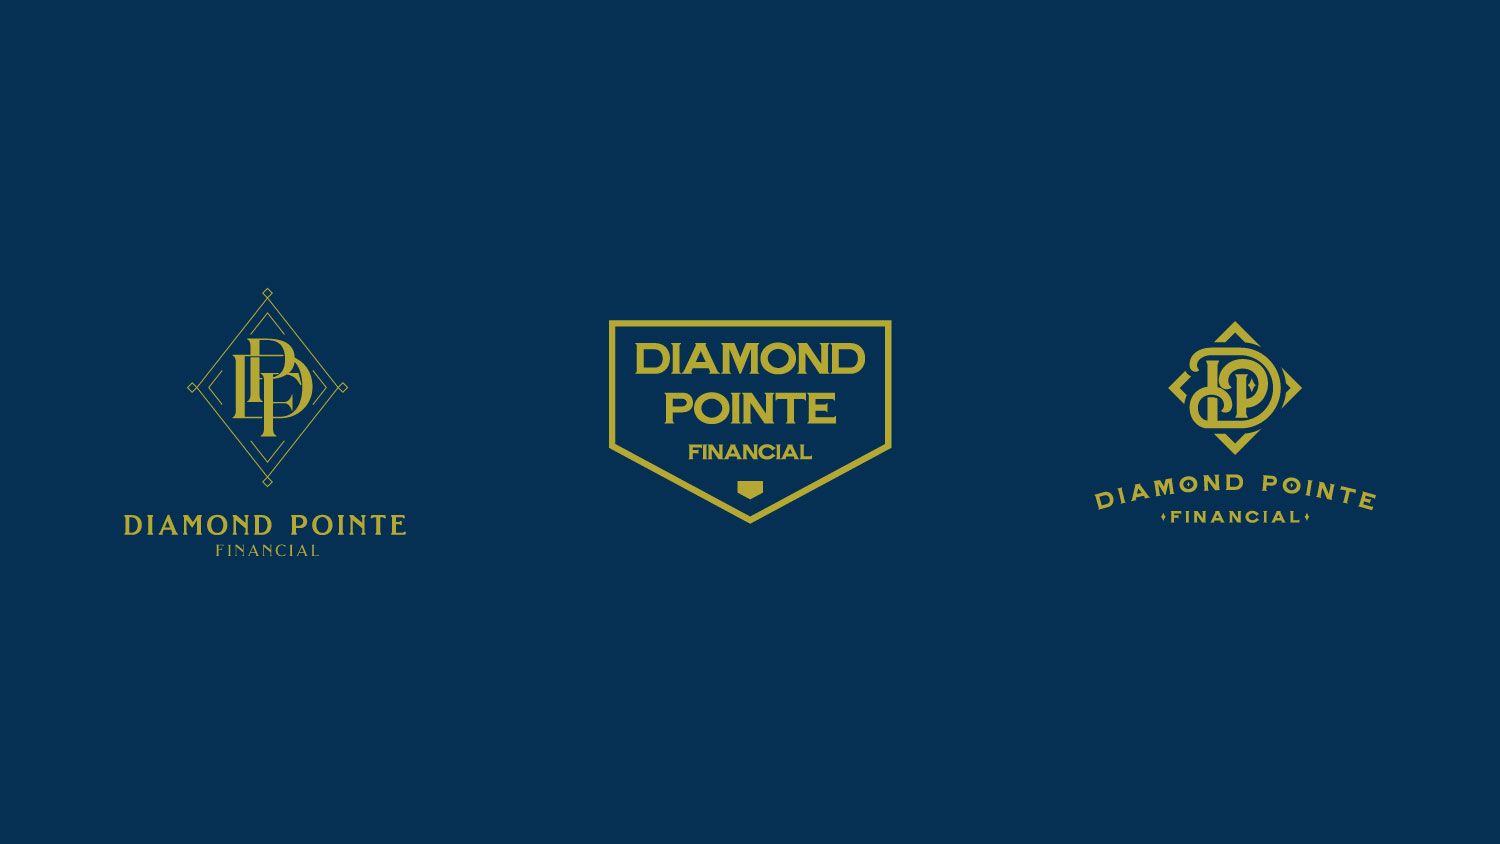 Diamond Pointe Financial Logo Concepts